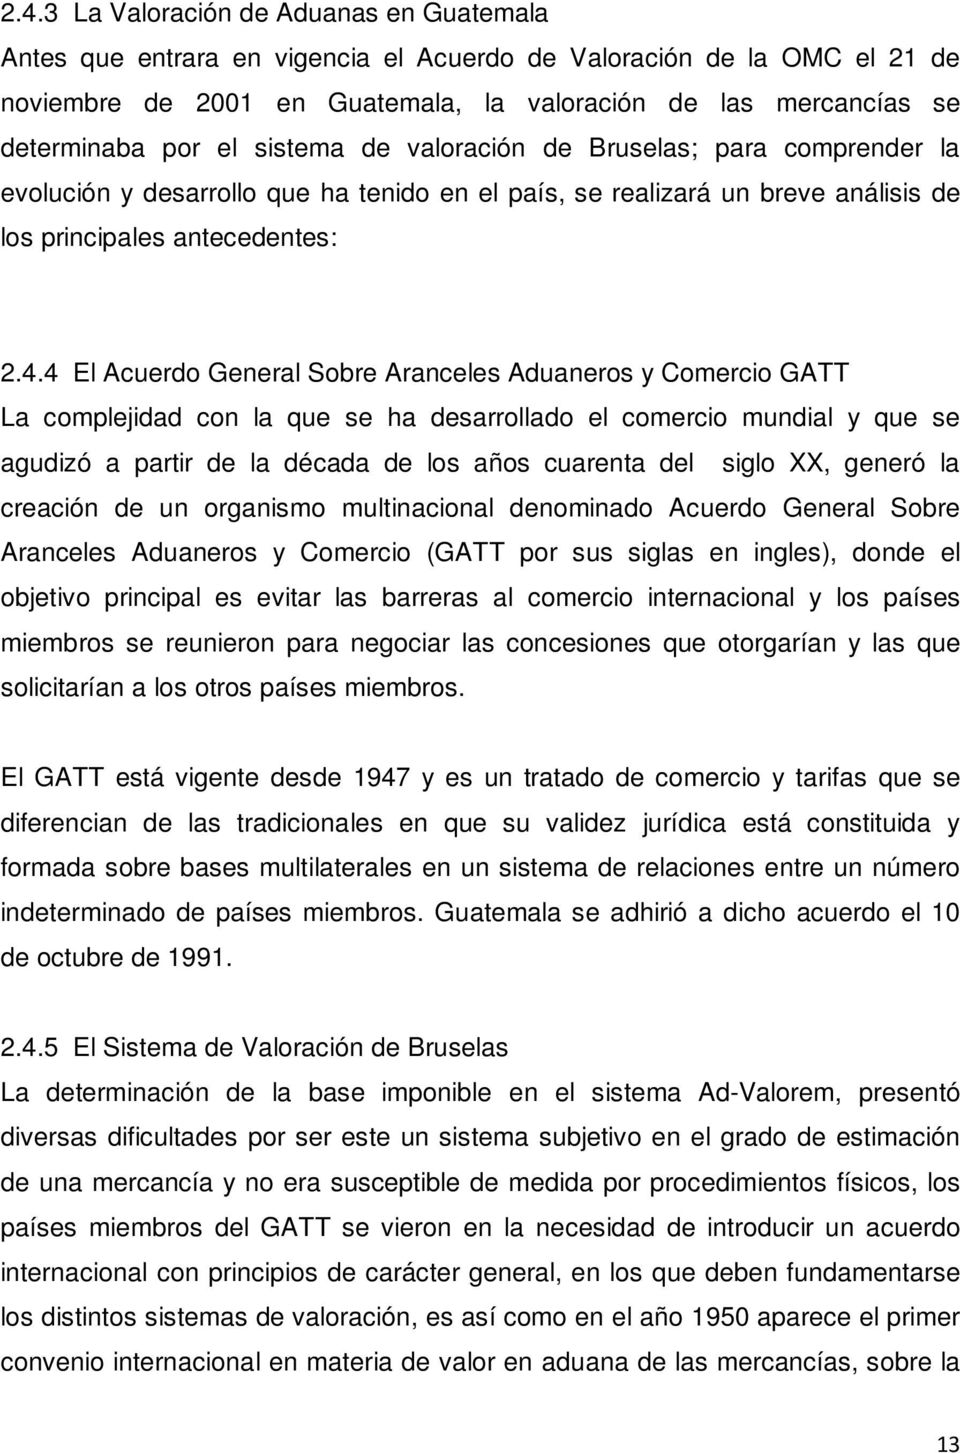 4 El Acuerdo General Sobre Aranceles Aduaneros y Comercio GATT La complejidad con la que se ha desarrollado el comercio mundial y que se agudizó a partir de la década de los años cuarenta del siglo